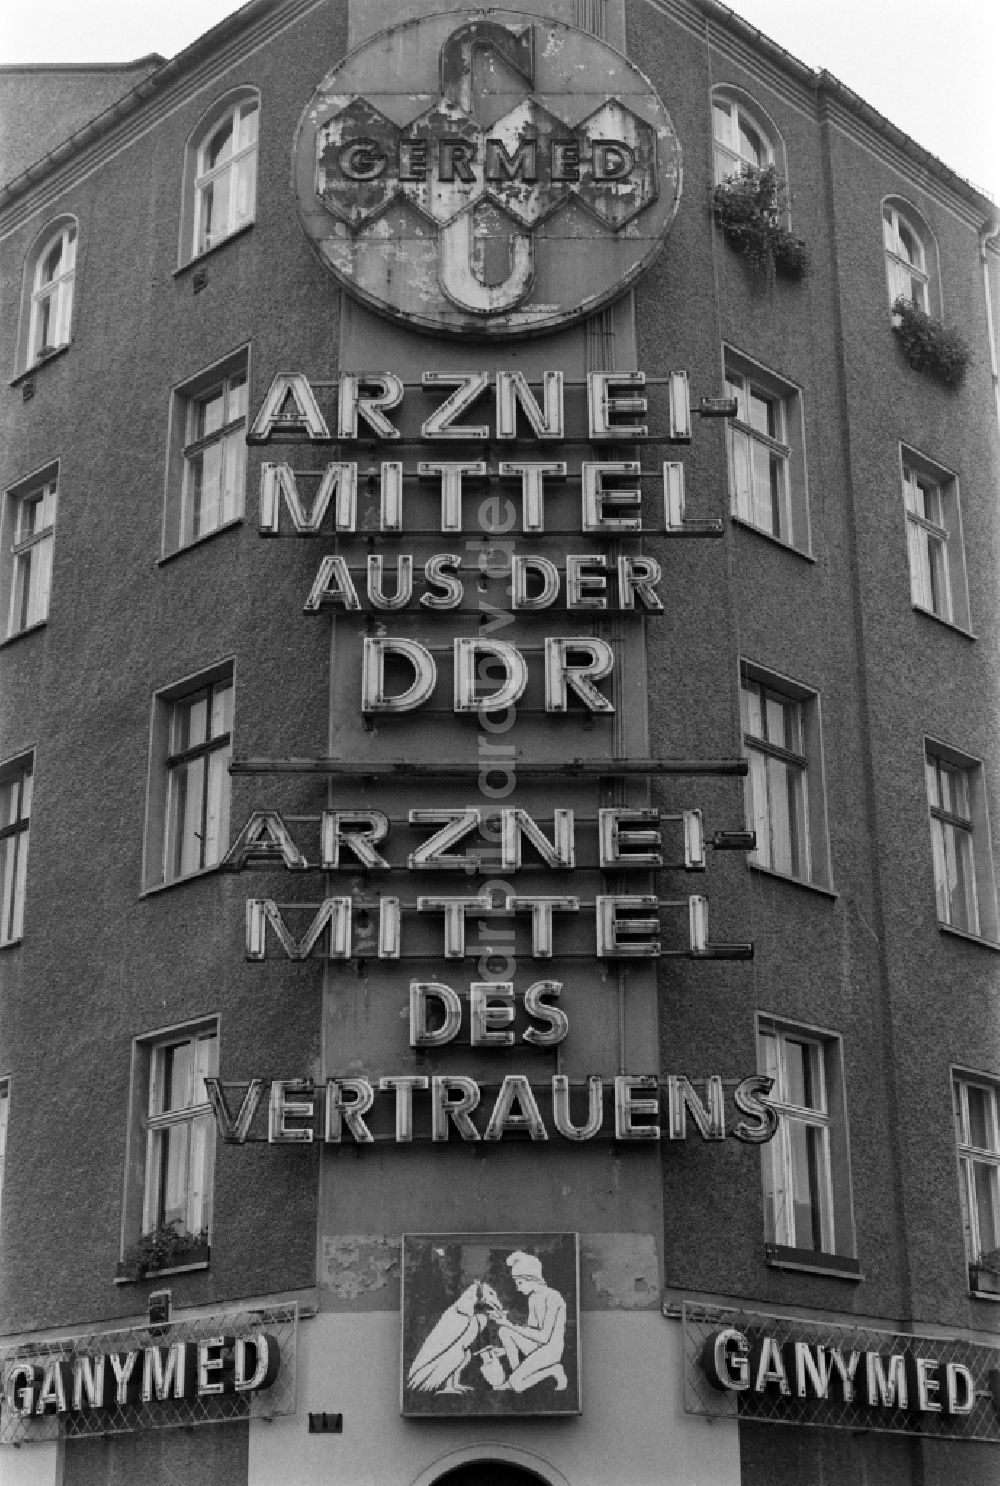 DDR-Bildarchiv: Berlin - Werbung für GERMED und Weinrestaurant Ganymed am Schiffbauerdamm in Berlin - Mitte, der ehemaligen Hauptstadt der DDR, Deutsche Demokratische Republik